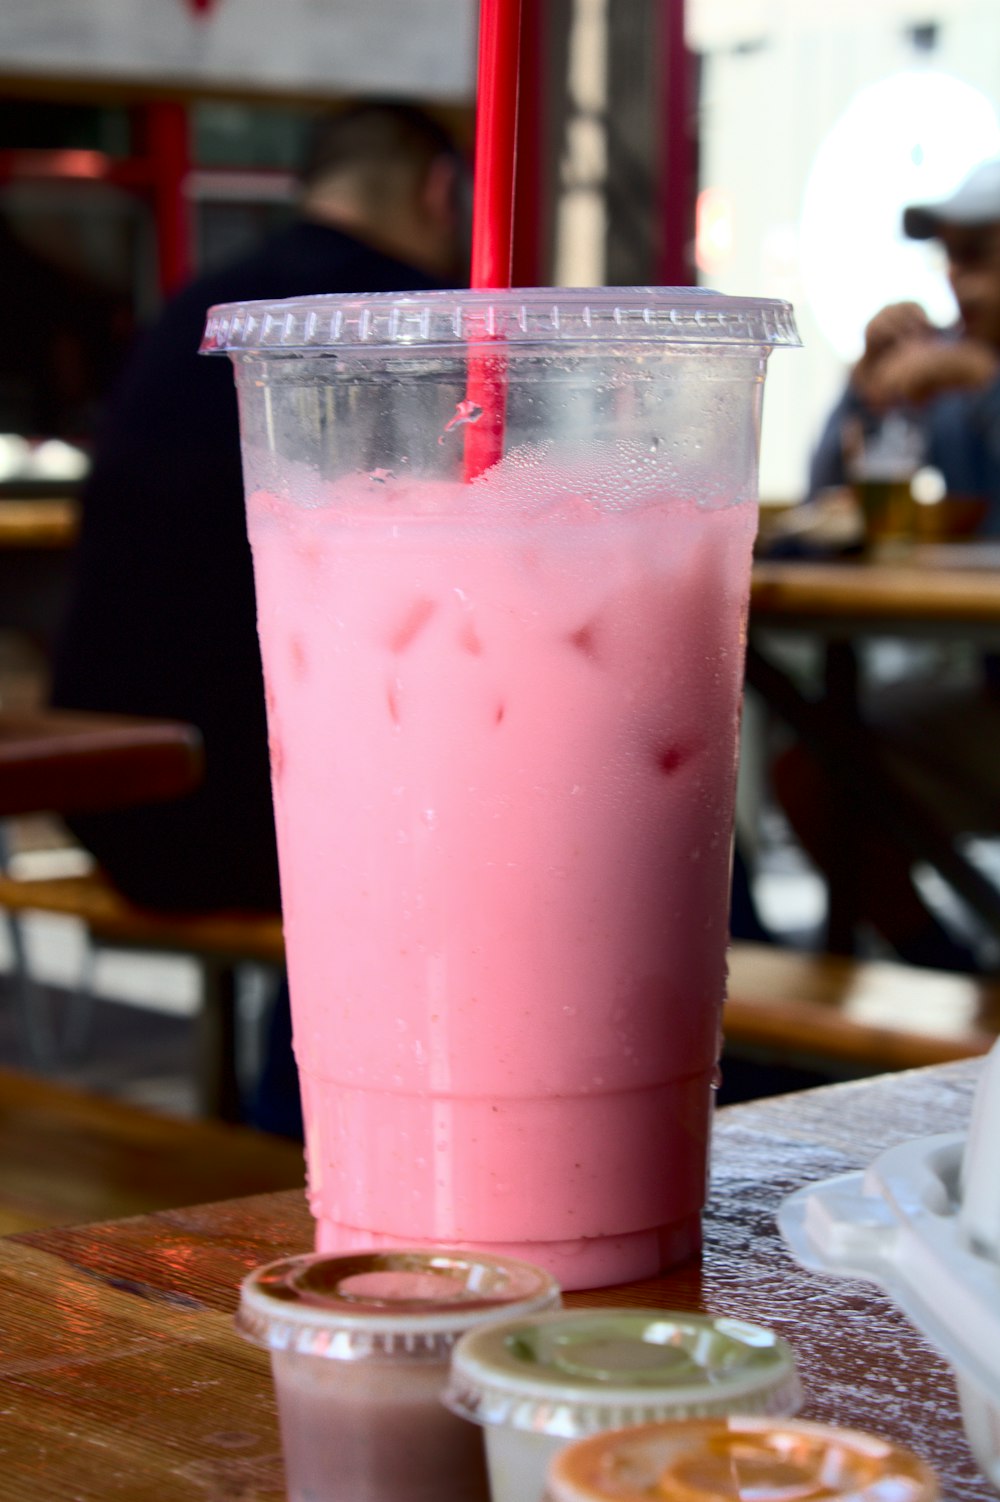 투명한 플라스틱 컵에 있는 분홍색 액체